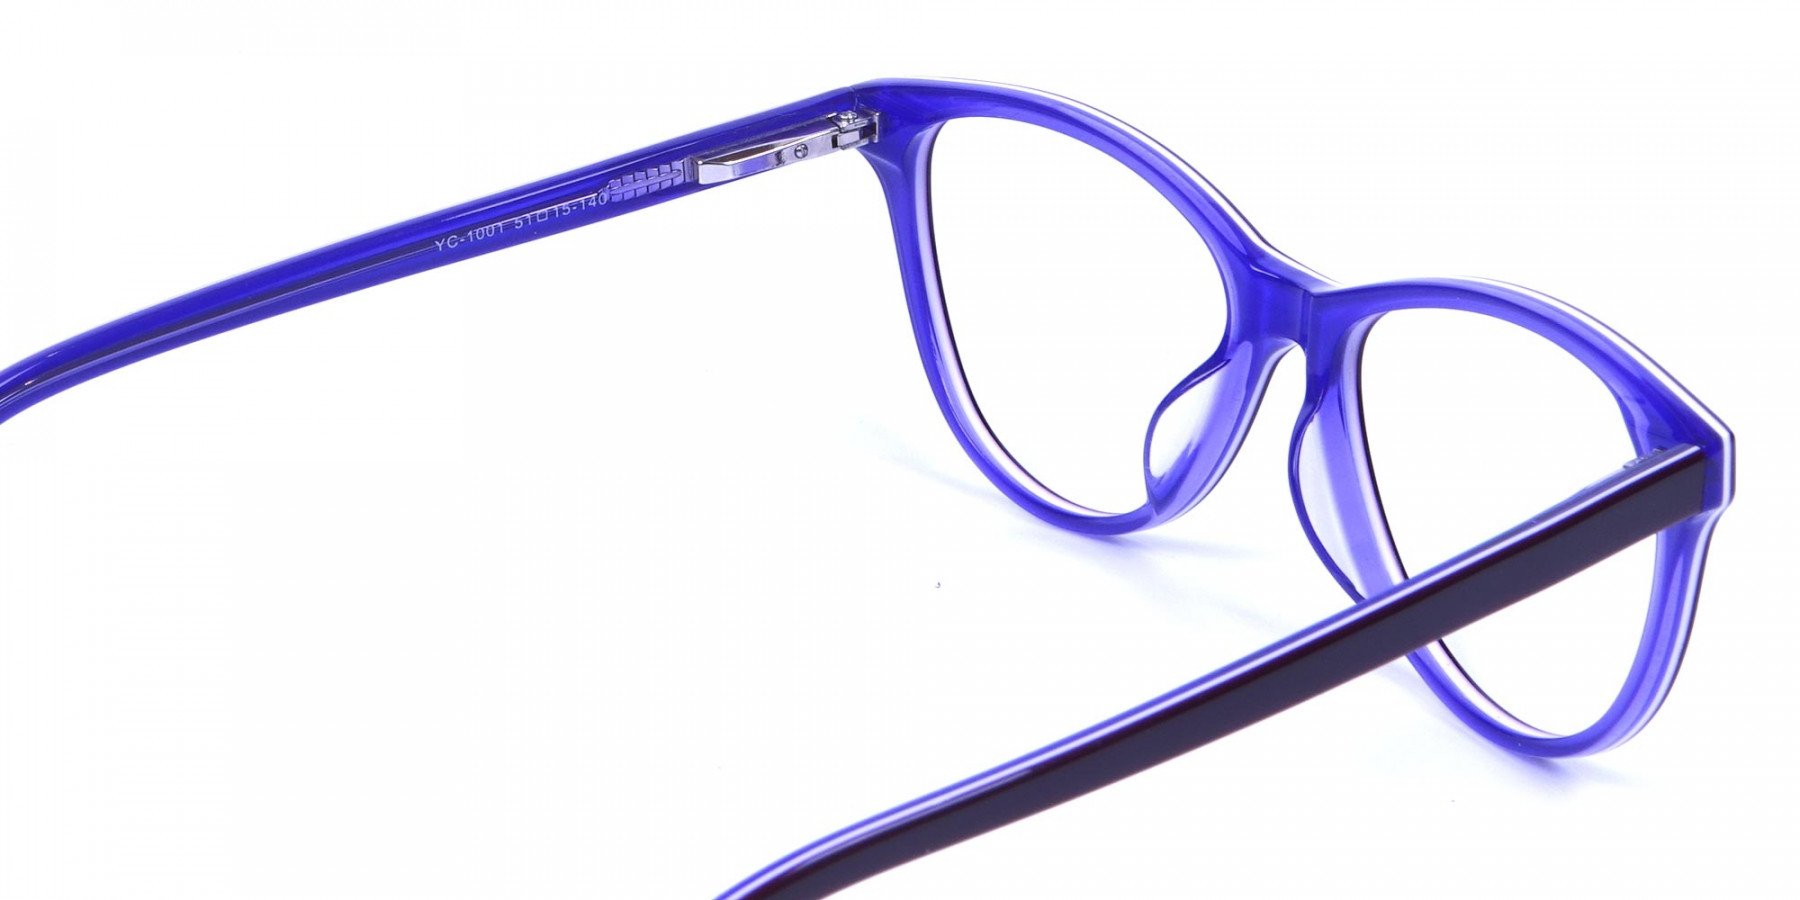 Women's Purple Cat Eye Glasses